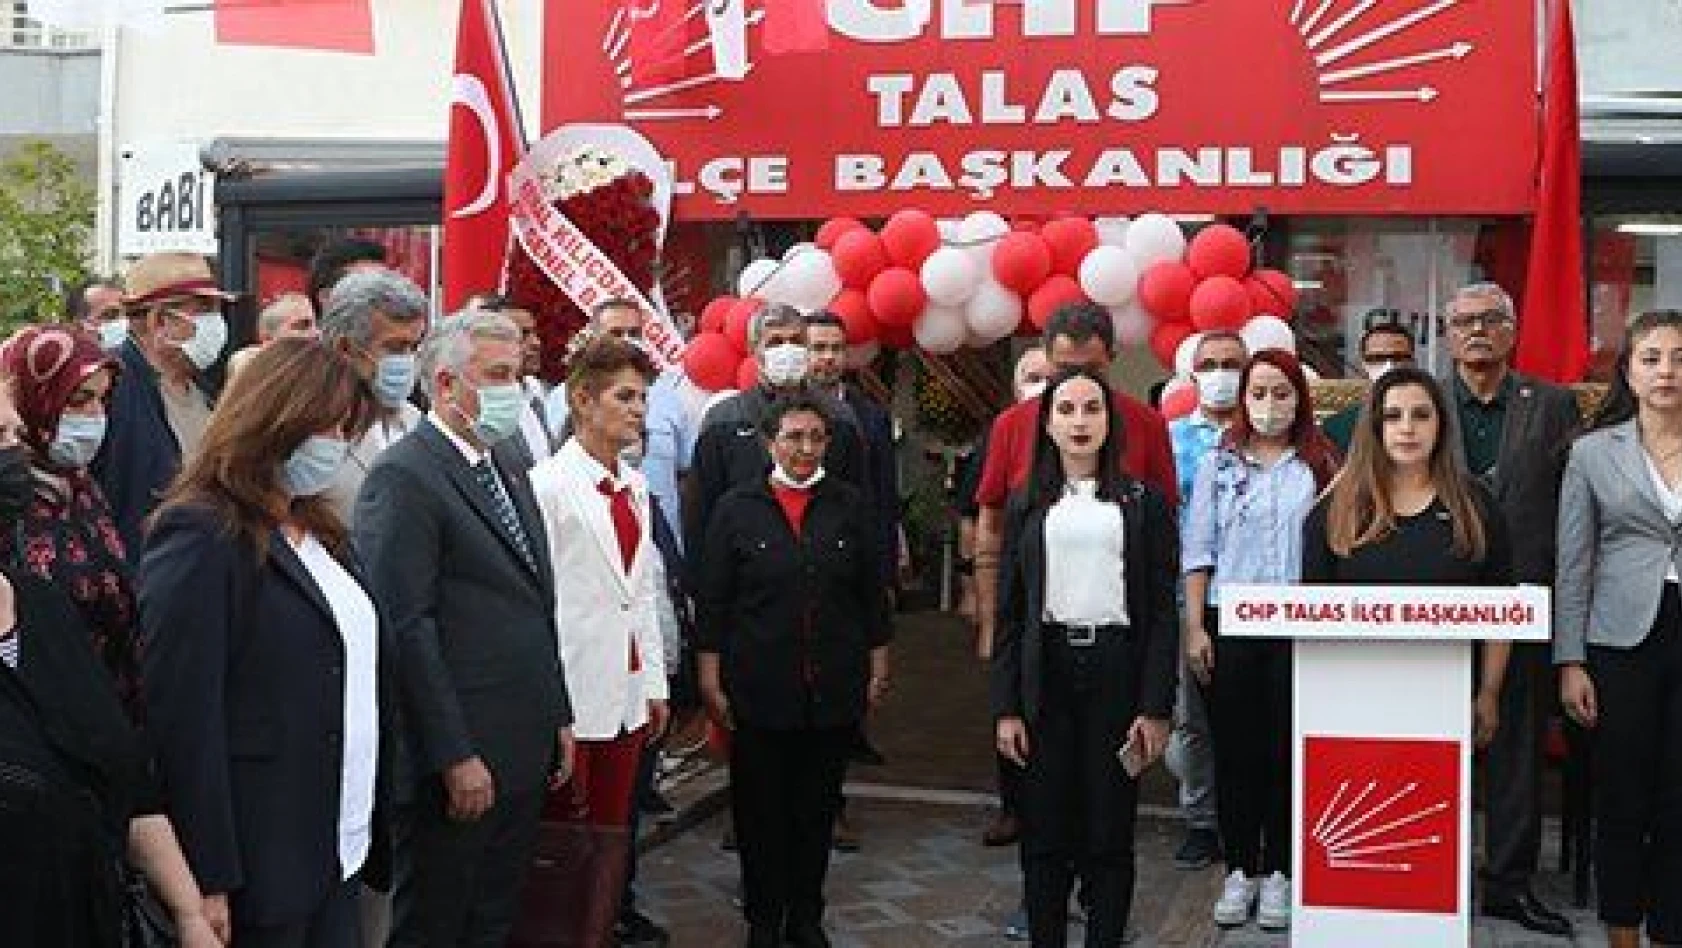 CHP Talas İlçe Başkanlığı yeni binası törenle açıldı